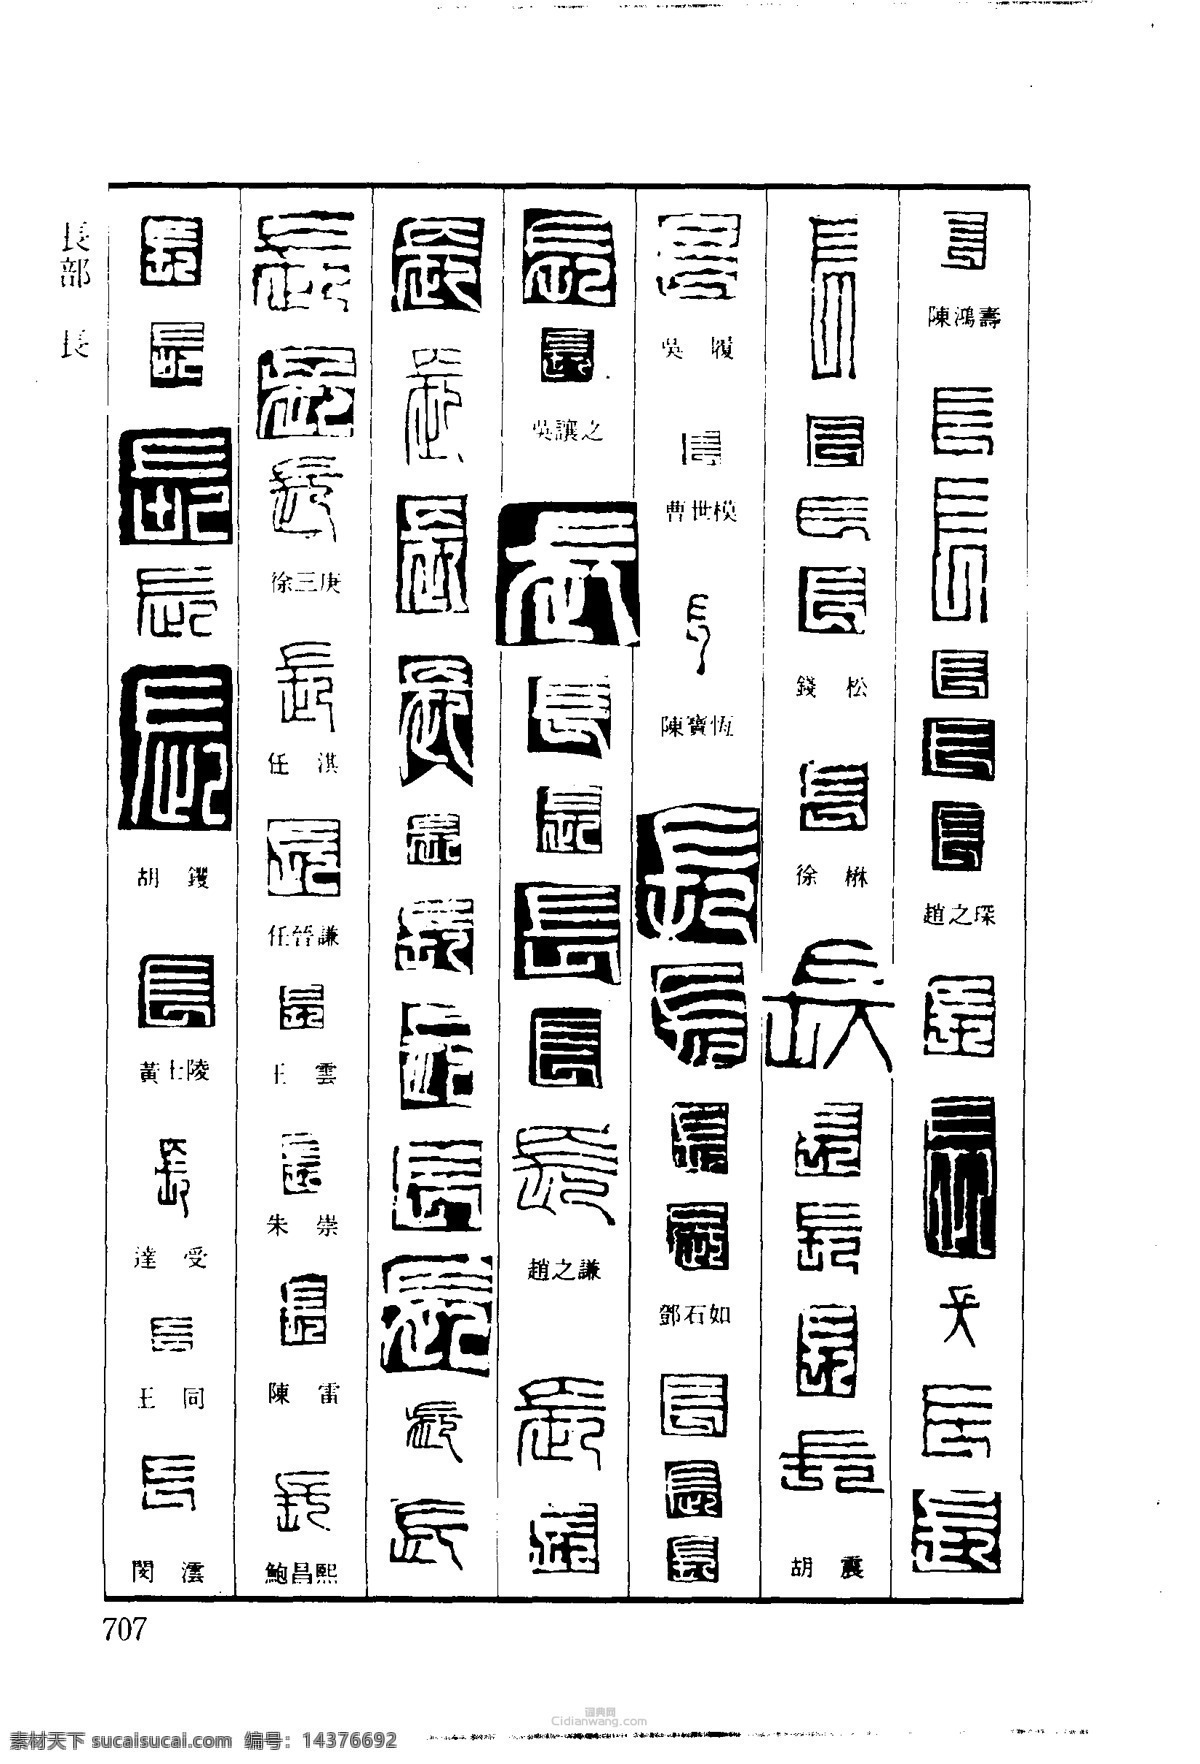 篆刻字体 雕刻字体 印章字体 字体设计 印章刻字 古人印章字 印章字体大全 文化艺术 绘画书法